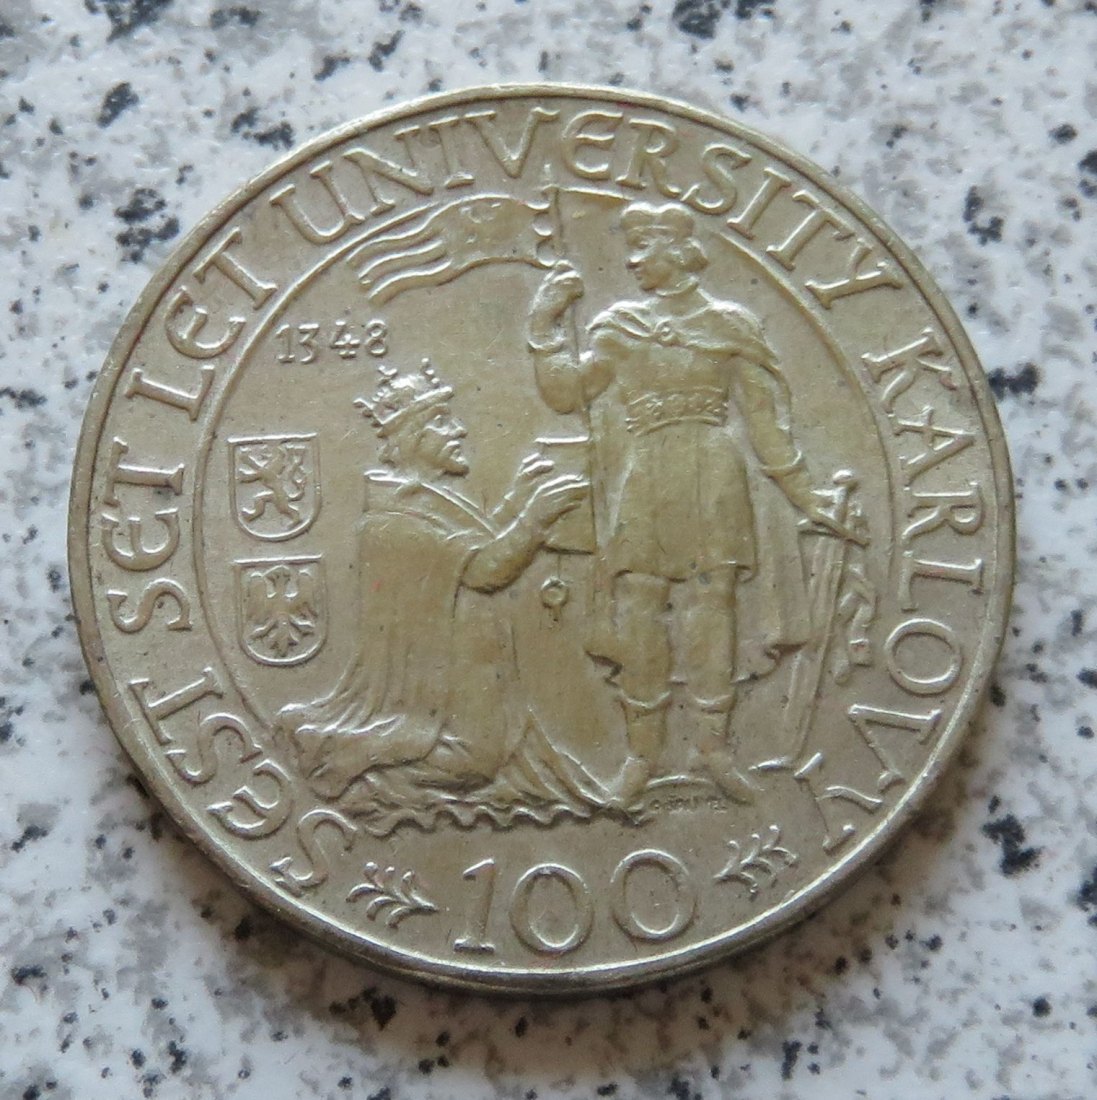  Tschechoslowakei 100 Korun 1948 (2)   